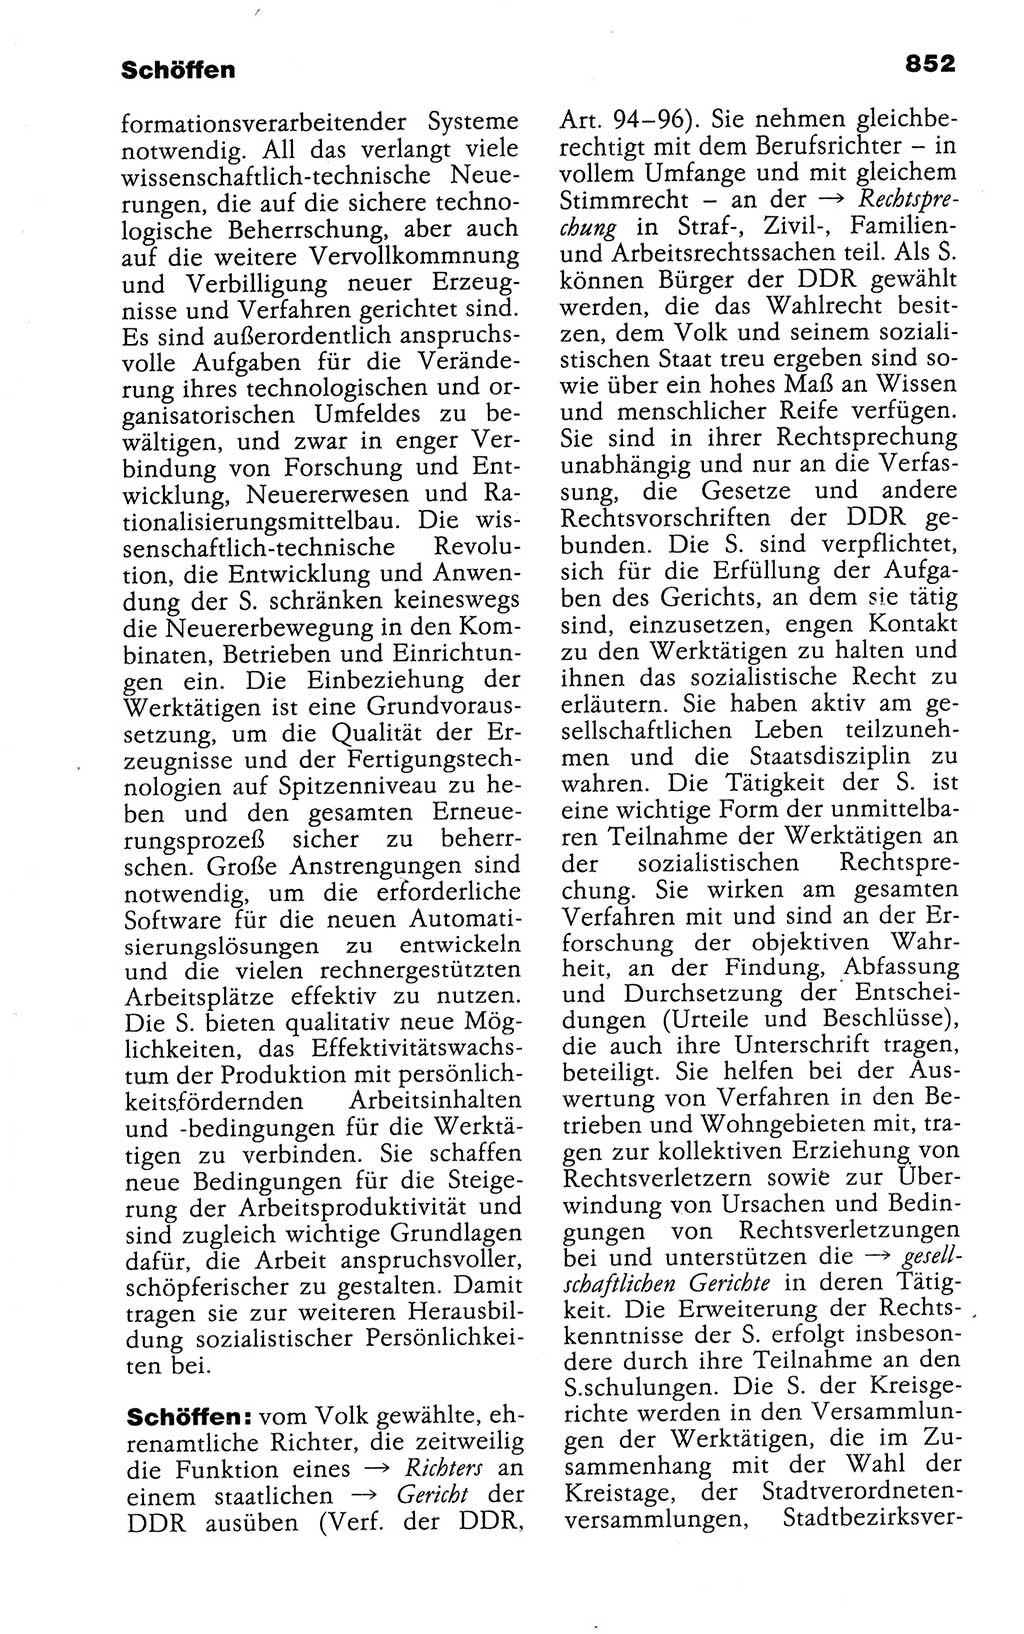 Kleines politisches Wörterbuch [Deutsche Demokratische Republik (DDR)] 1988, Seite 852 (Kl. pol. Wb. DDR 1988, S. 852)